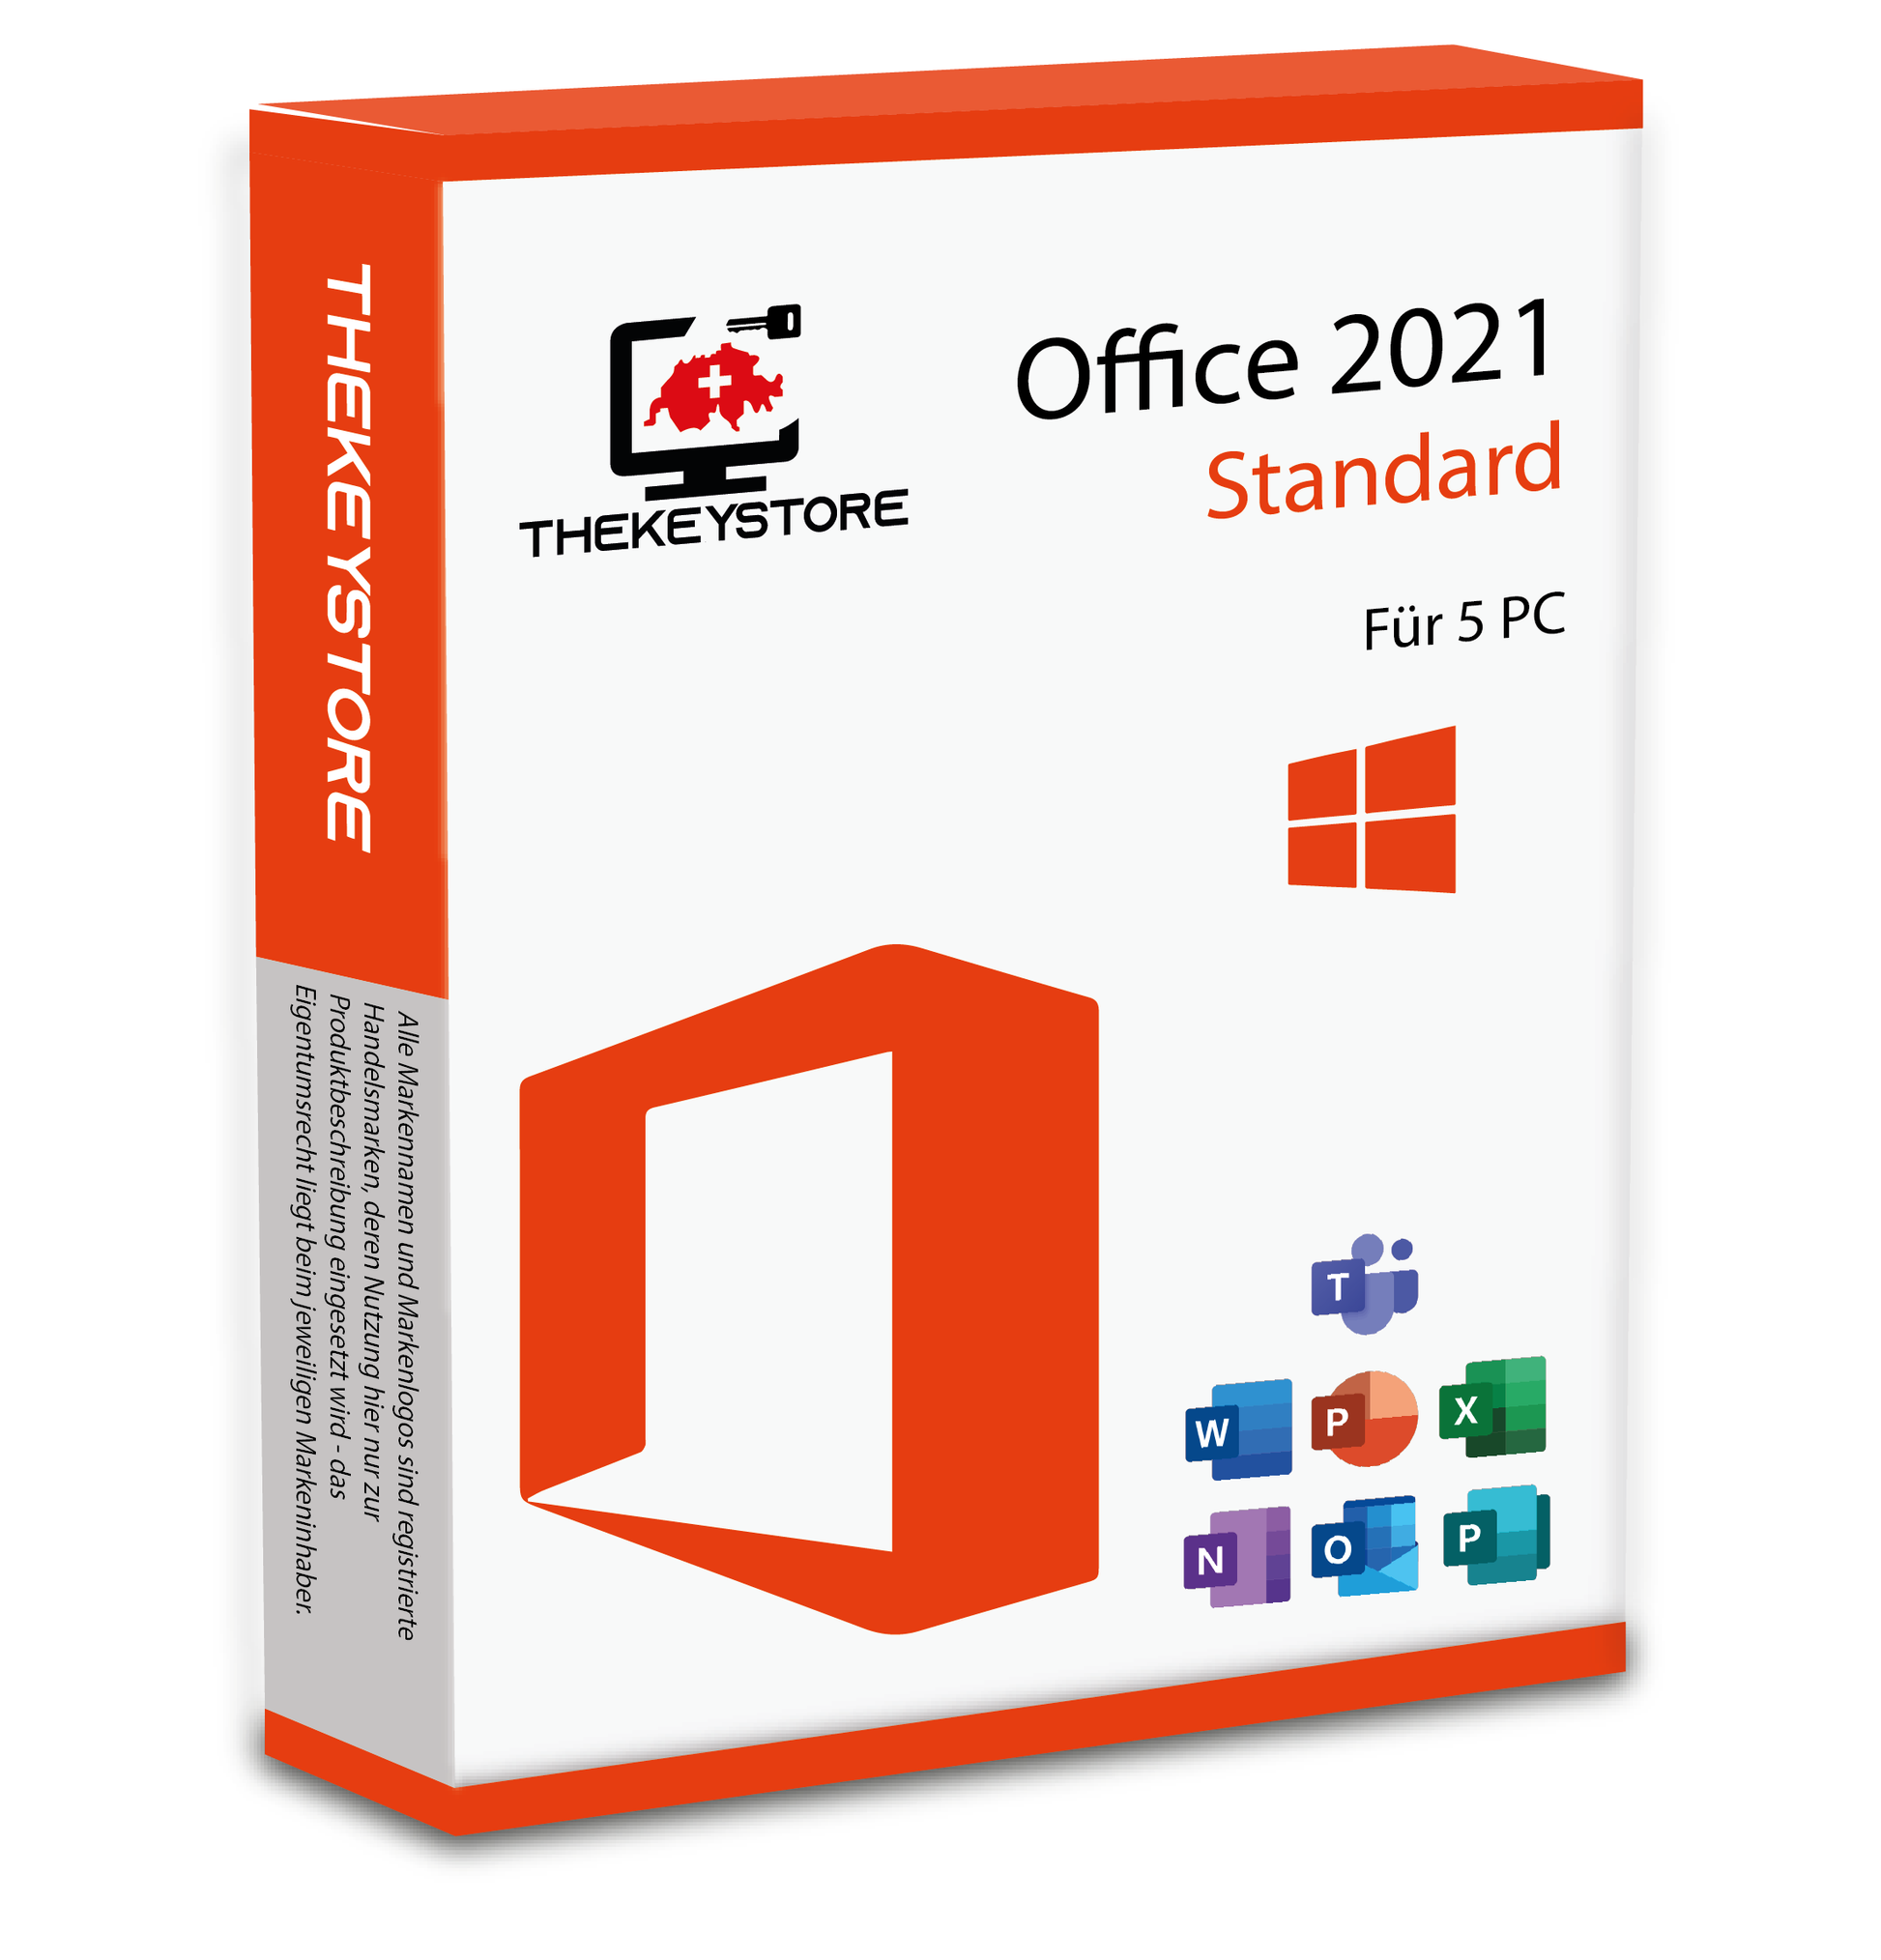 Microsoft Office 2021 Standard - Für 5 PC - TheKeyStore Schweiz